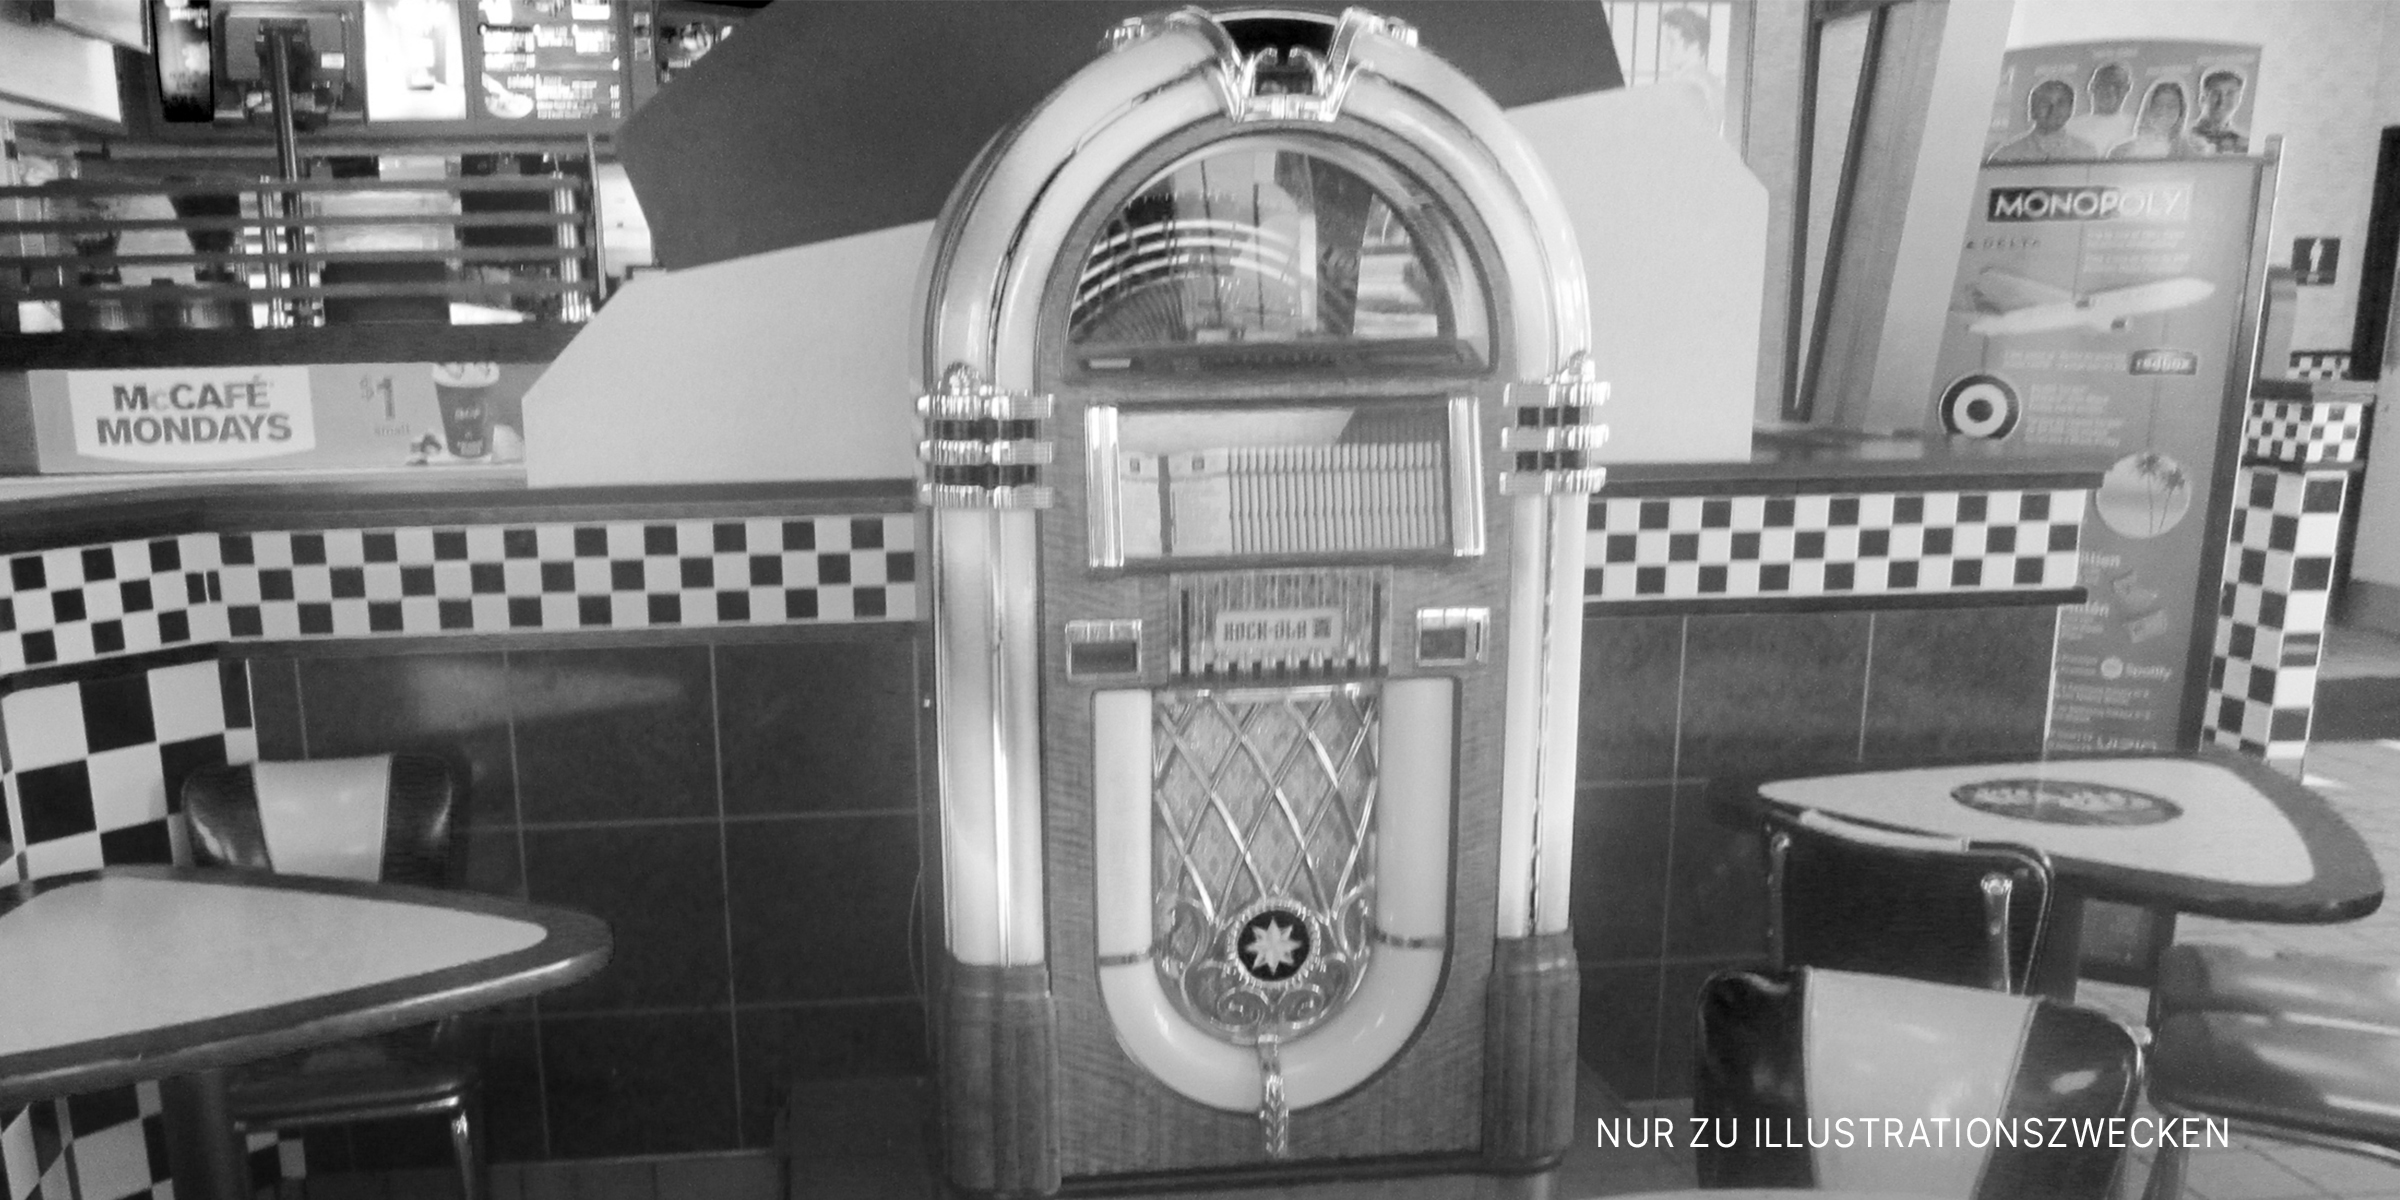 Eine alte Jukebox. | Quelle: Flickr / Random Retail (CC BY 2.0)